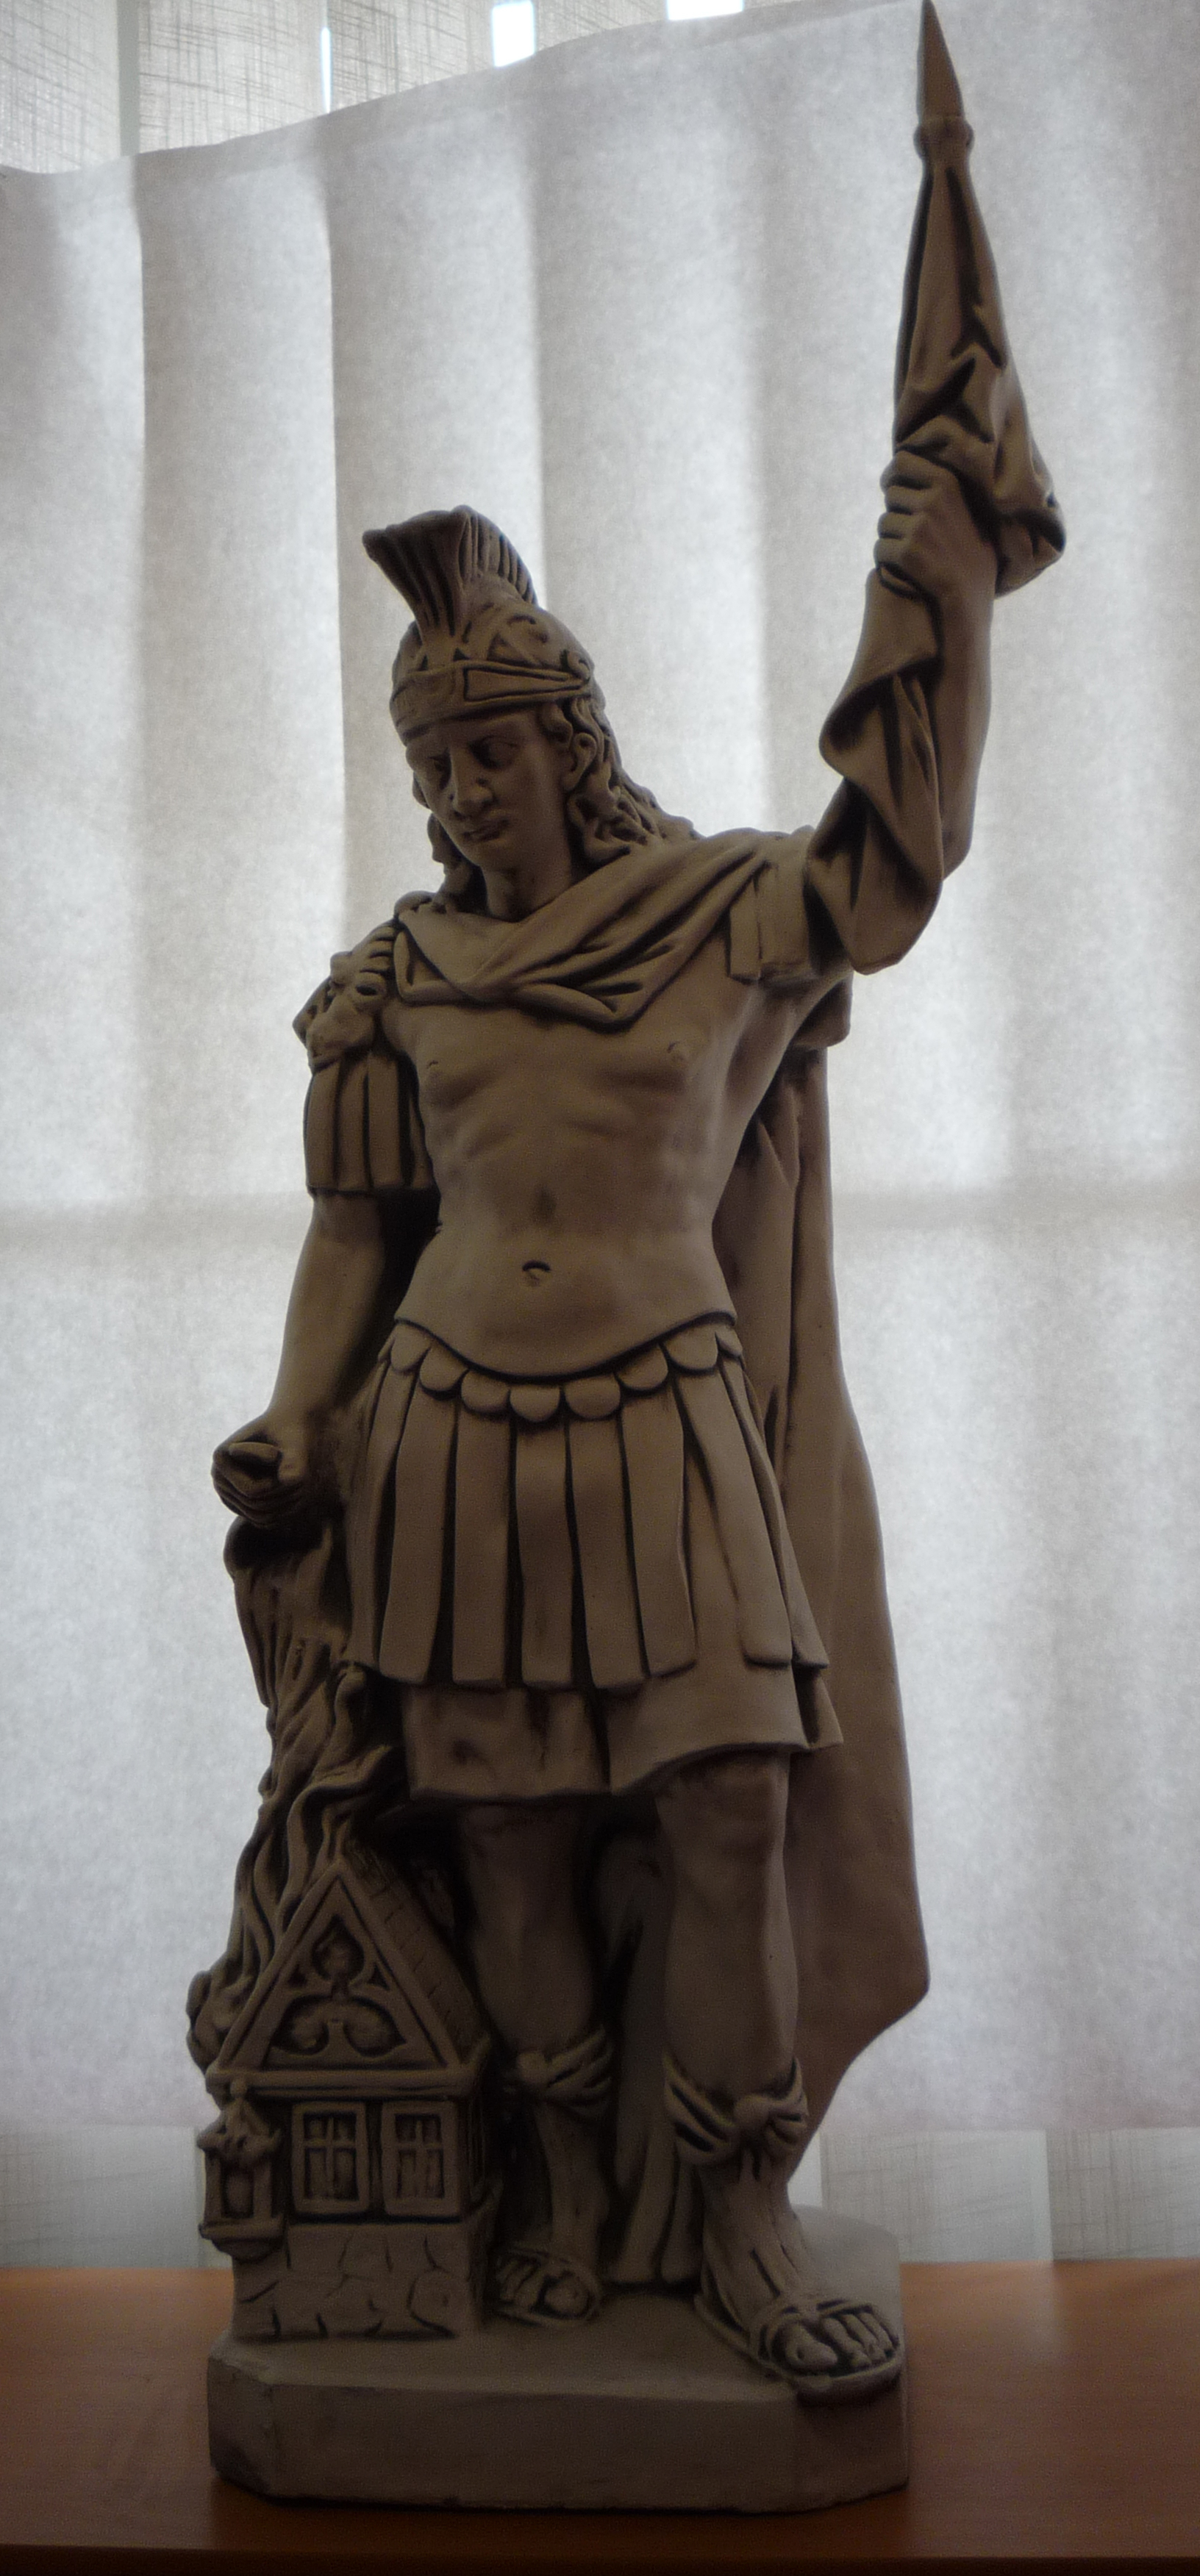 Socha Betónová socha  Sv. Florián 110 cm, zaoblený spodok sochy 30 x25 cm